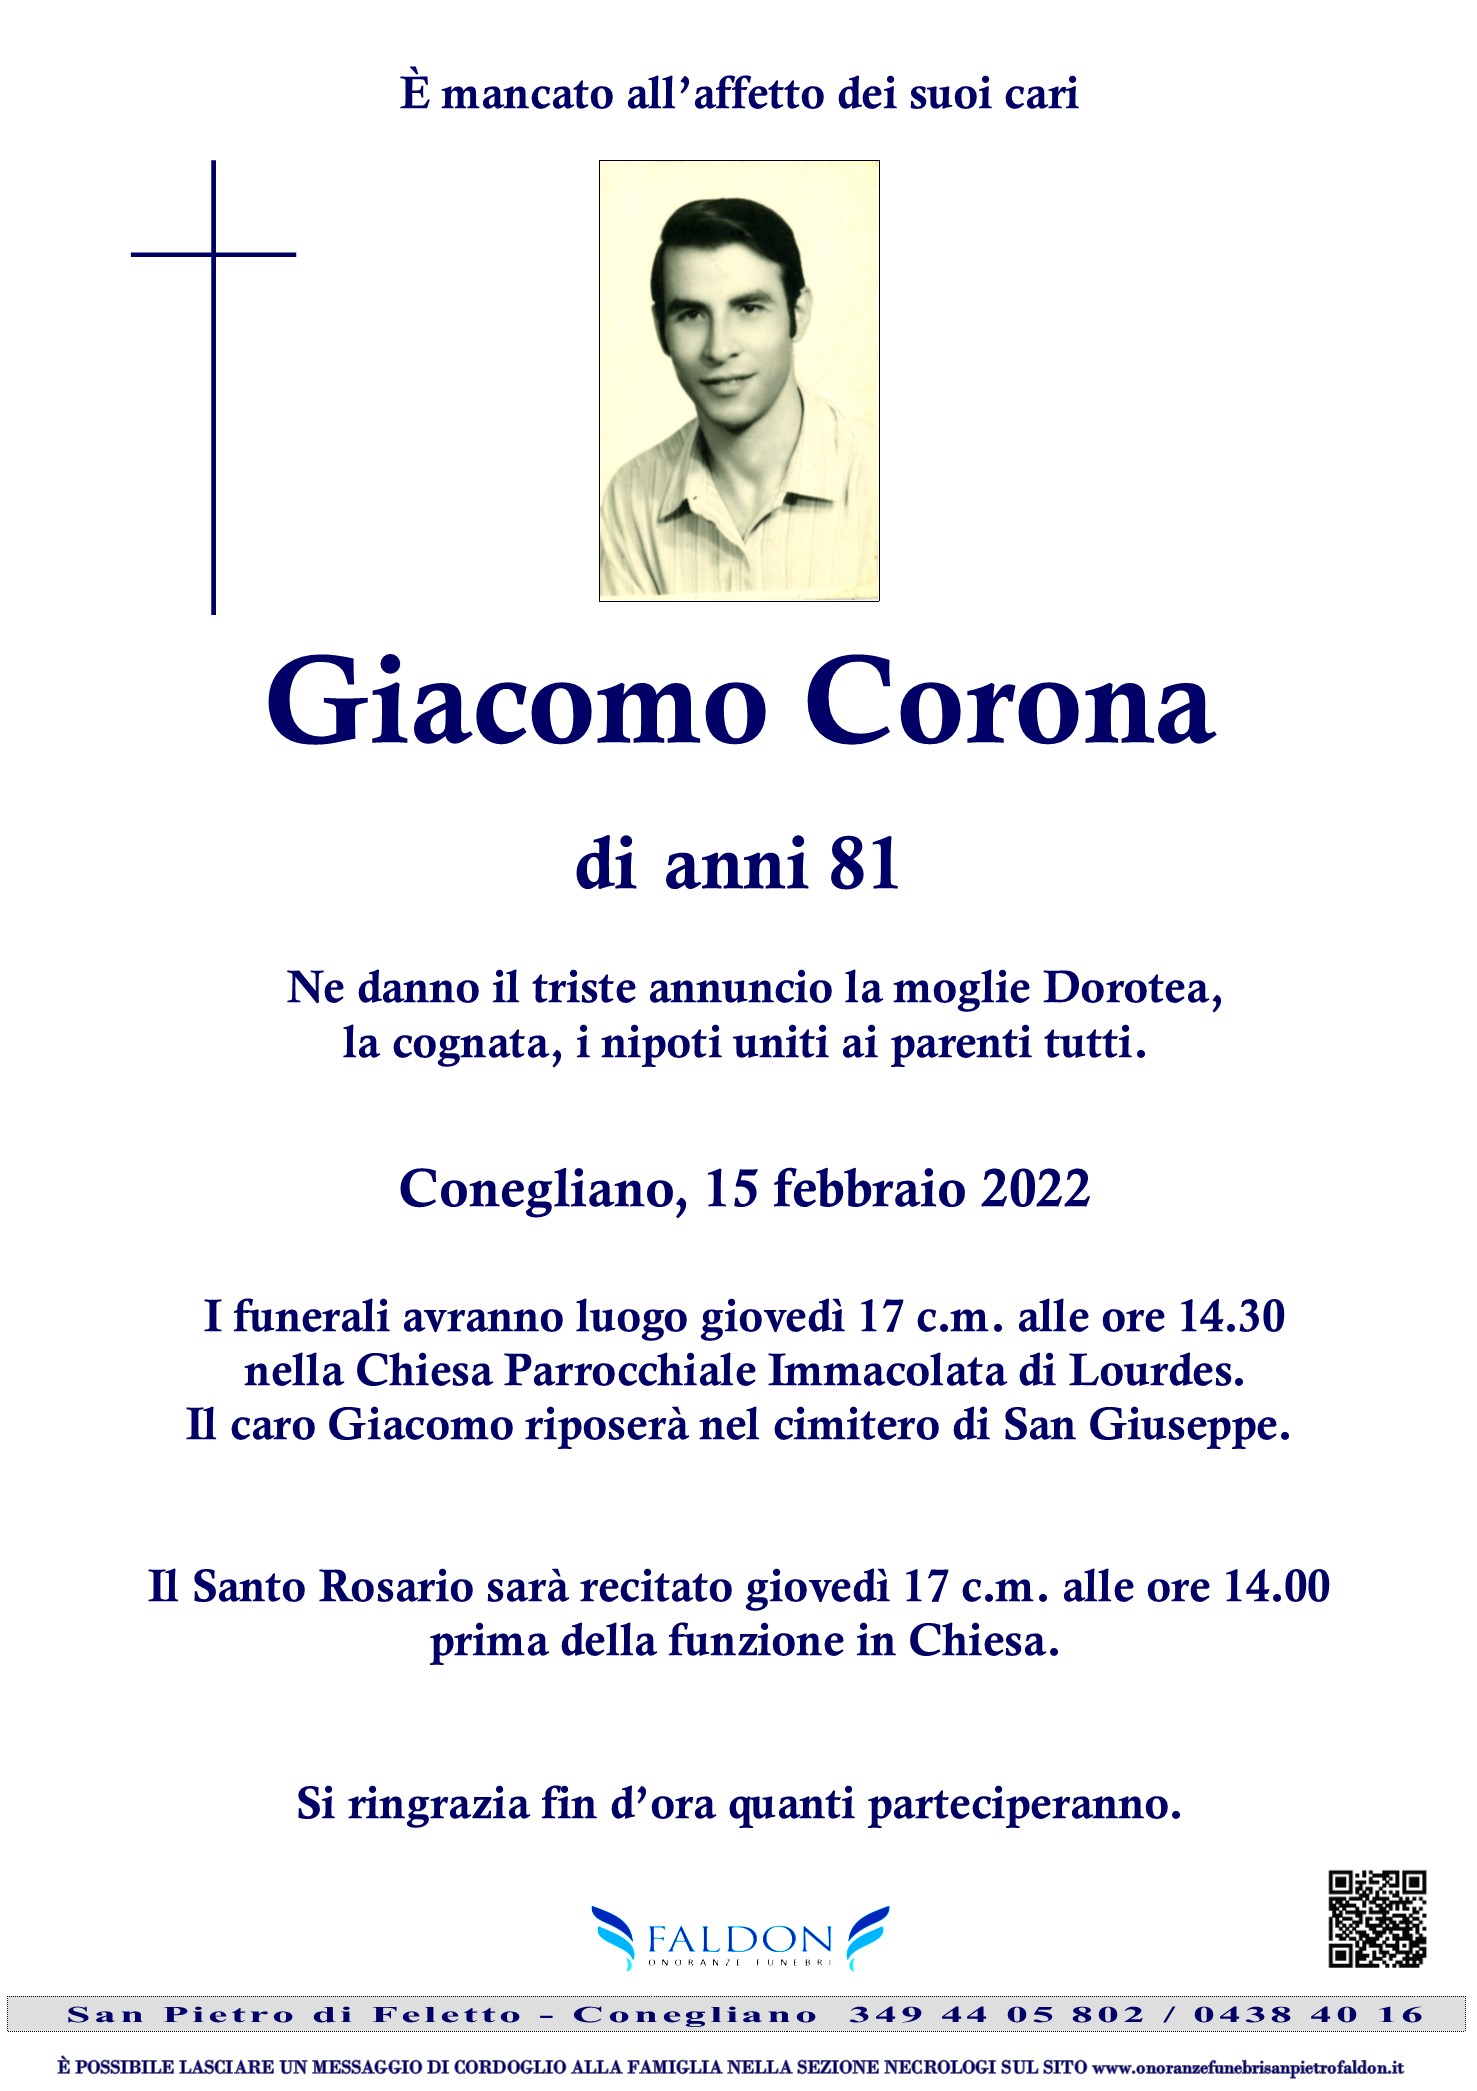 Giacomo Corona